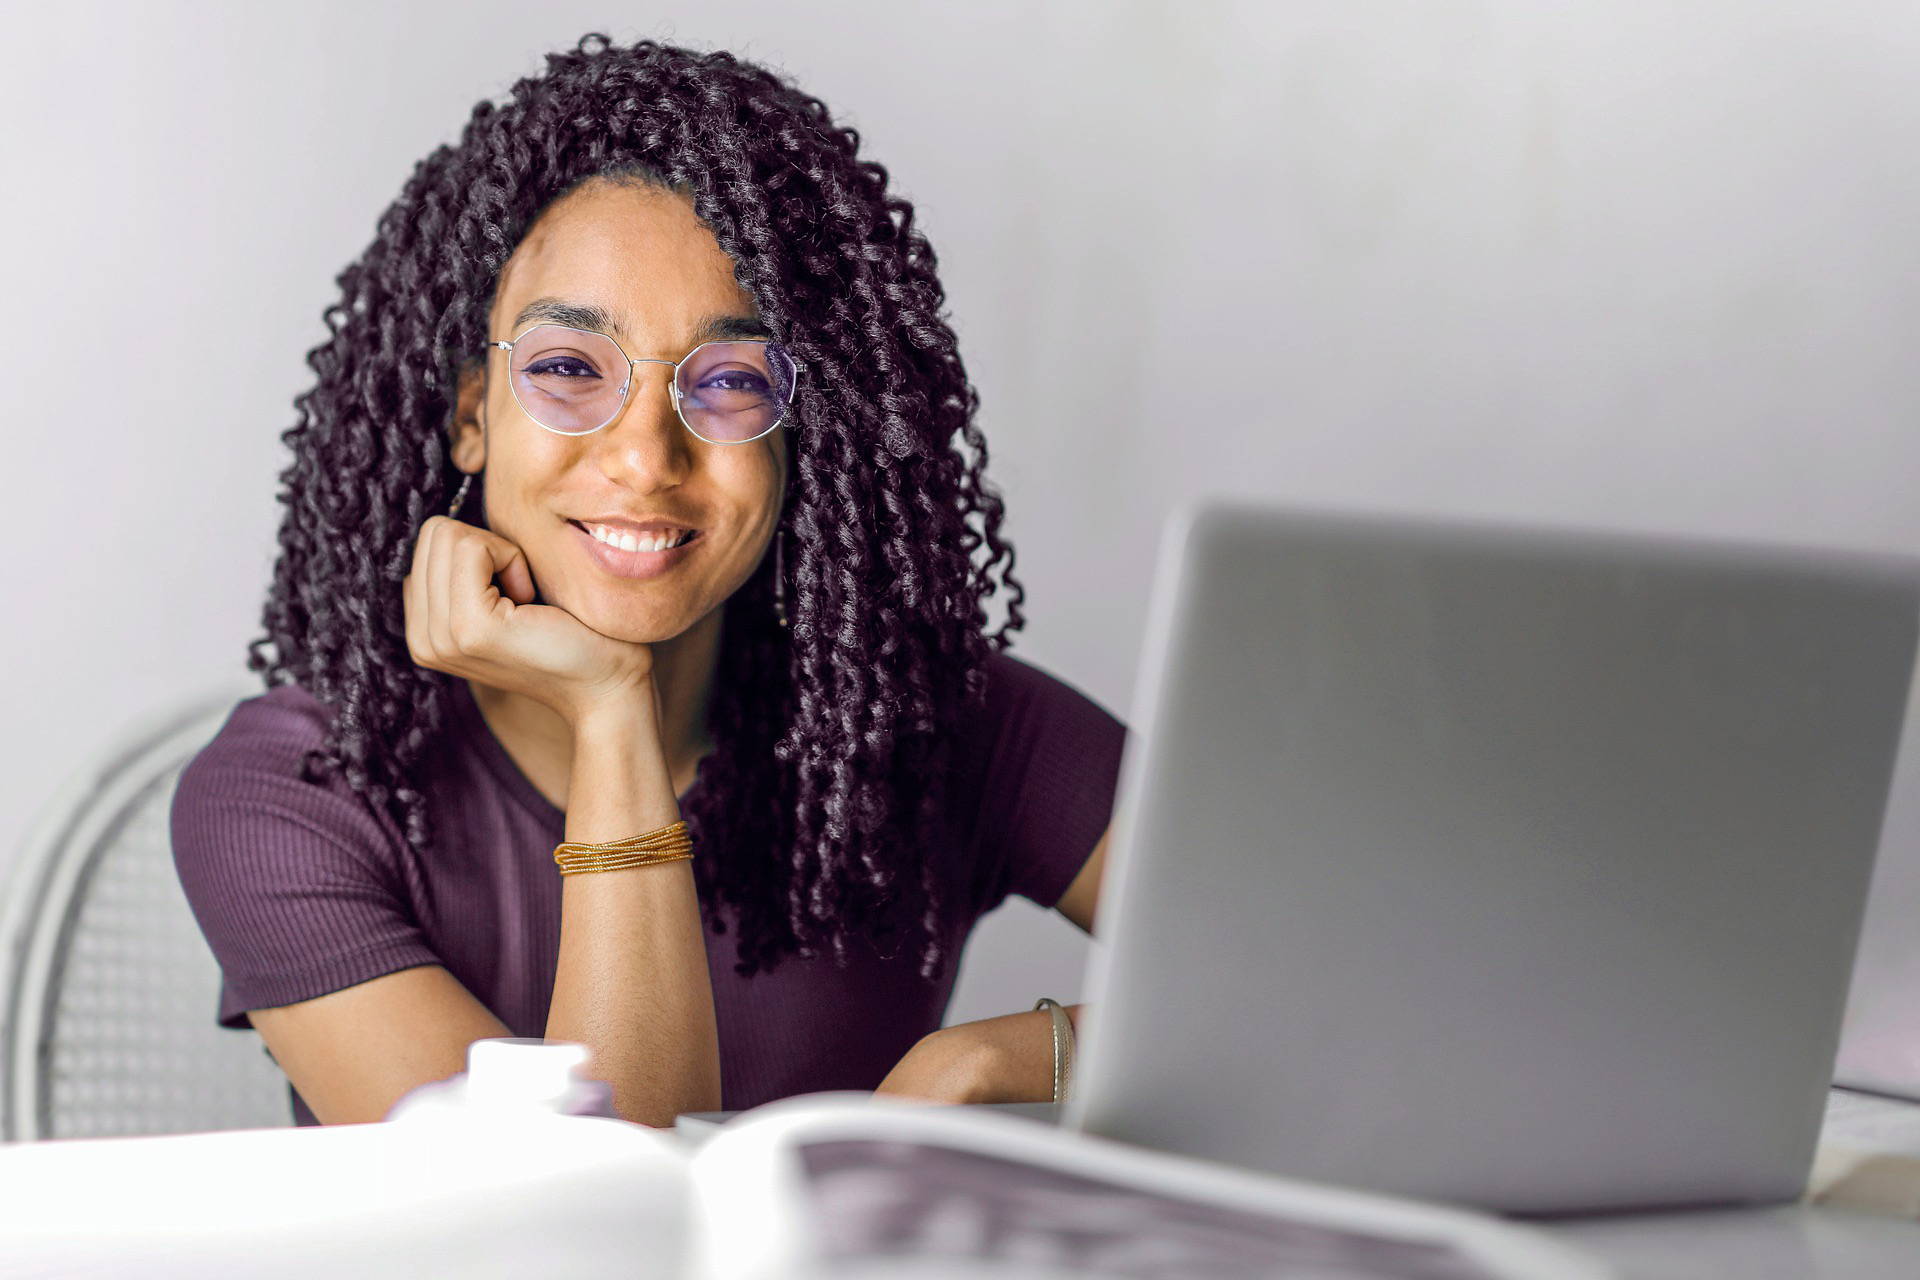 Femme portant des lunettes rondes bloquant la lumière bleue, assise devant l'ordinateur